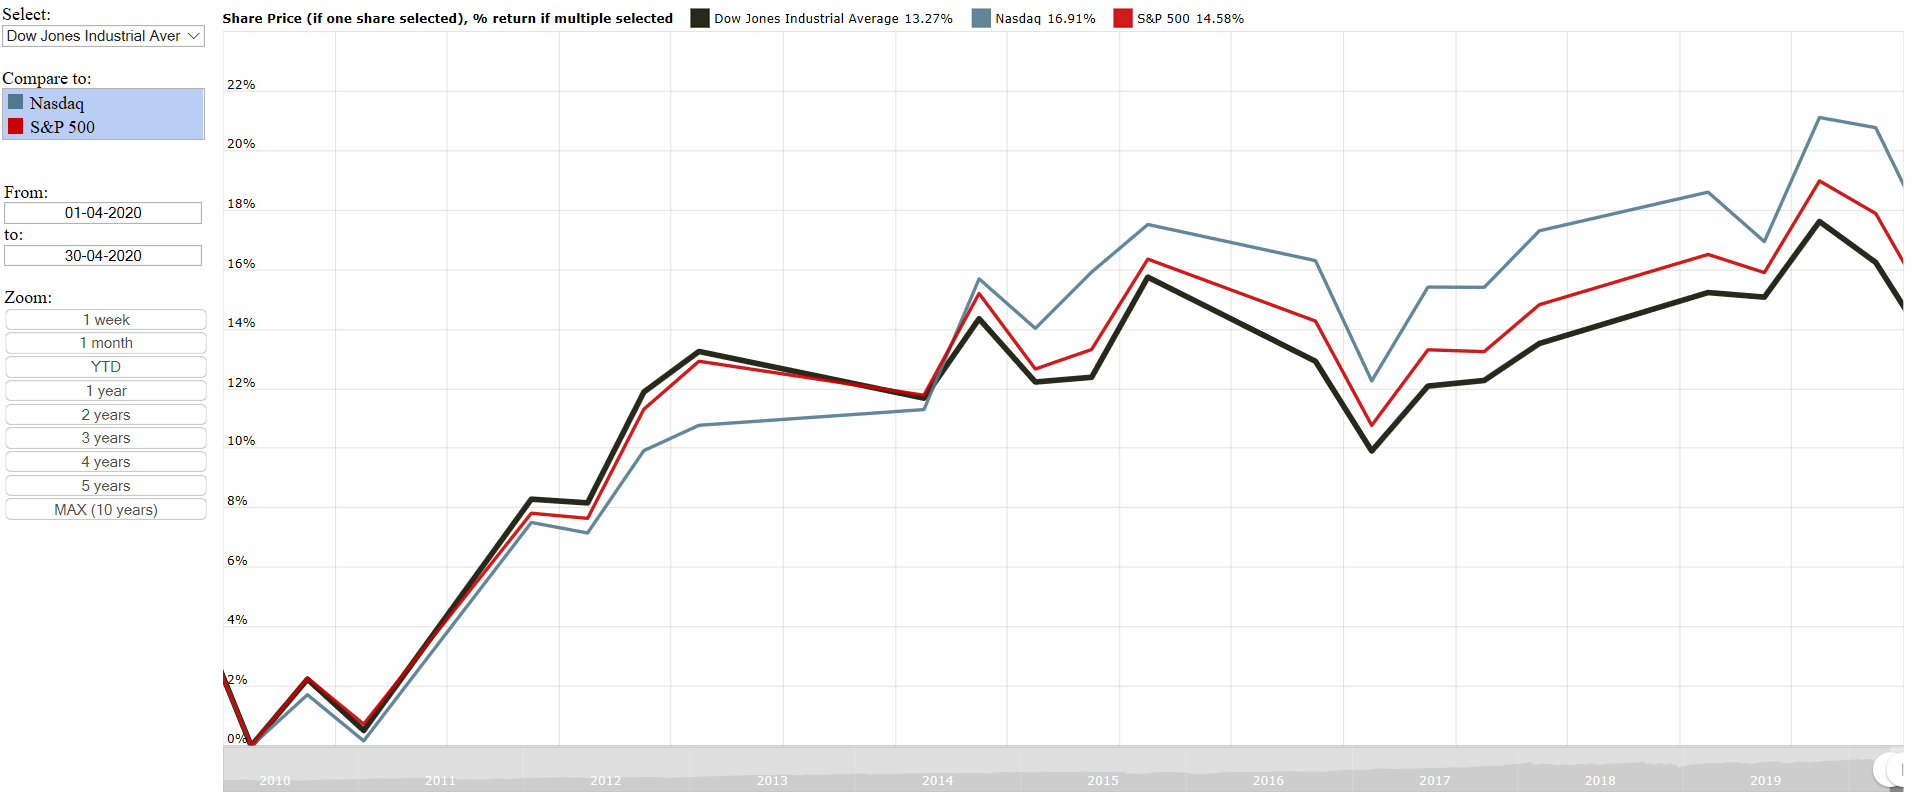 Dow Jones Industrial Average (DJIA) vs Nasdaq vs S&P 500 for April 2020